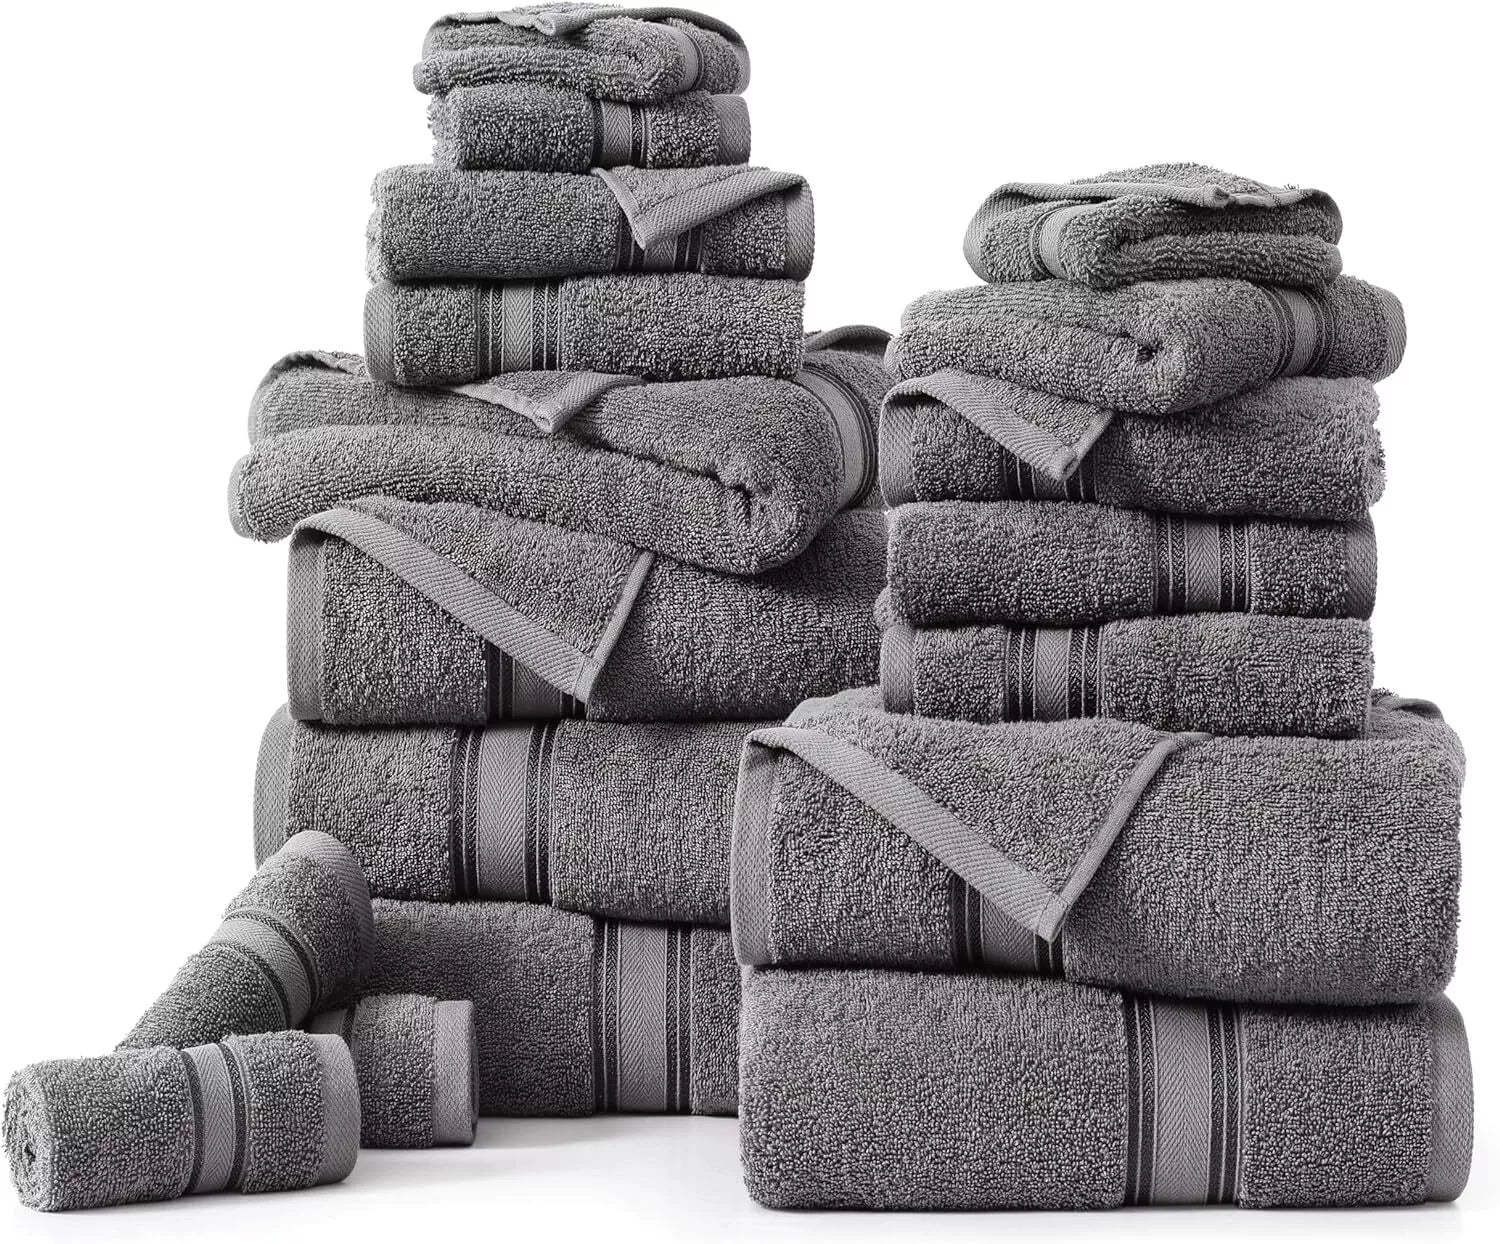 8-Piece Towel Bale - Complete Bathroom Laundry Set